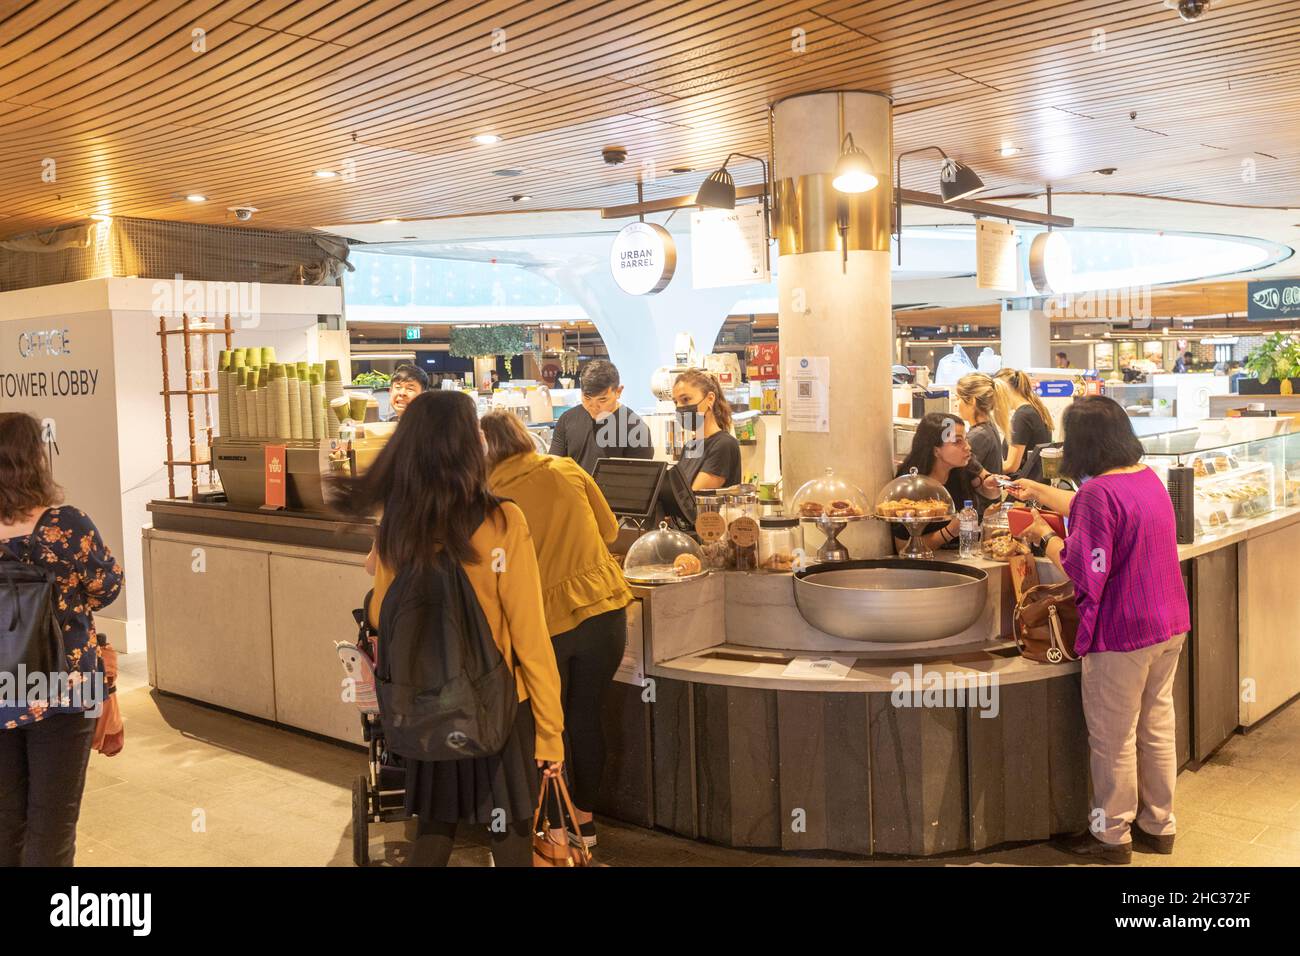 Dezember 2021 während der Zunahme der omicron-Fälle bedient das kleine Sydney City Centre Café Kunden mit Kaffee und Essen, Sydney, NSW, Australien Stockfoto